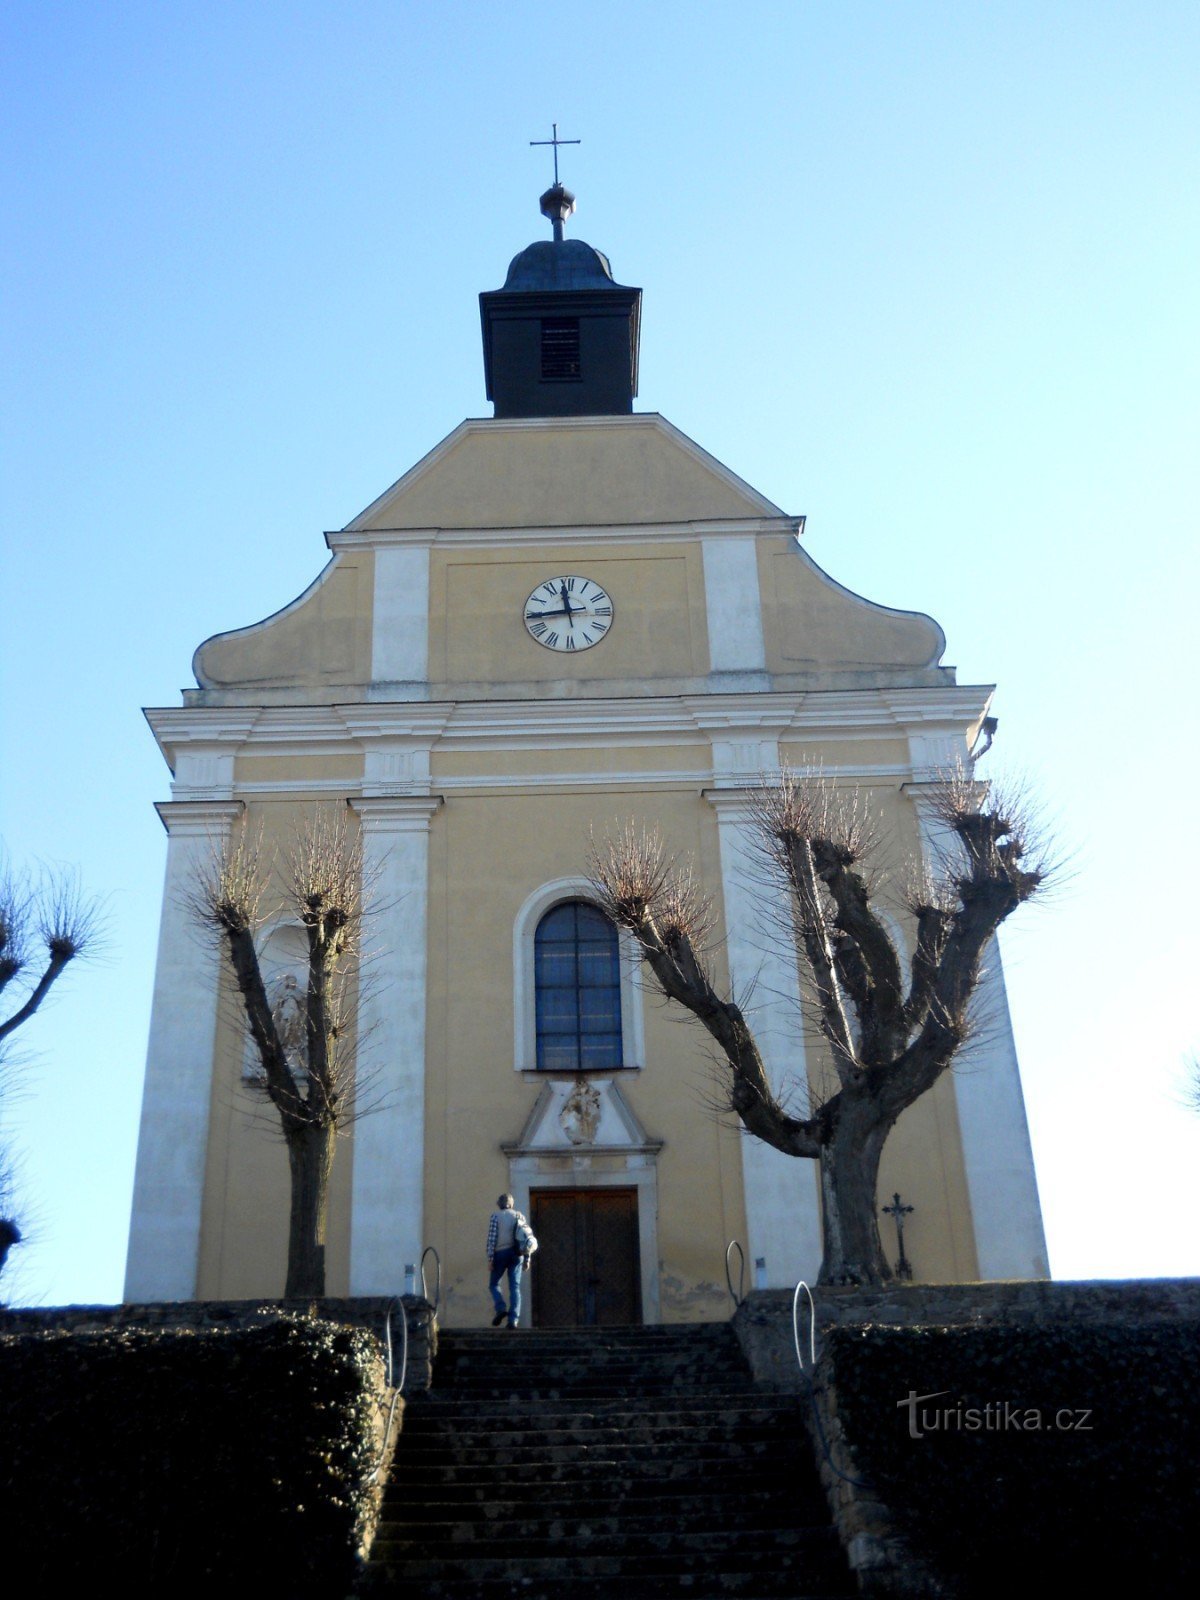 Kostelní Vydří - biserica de pelerinaj a Maicii Domnului din Muntele Carmel